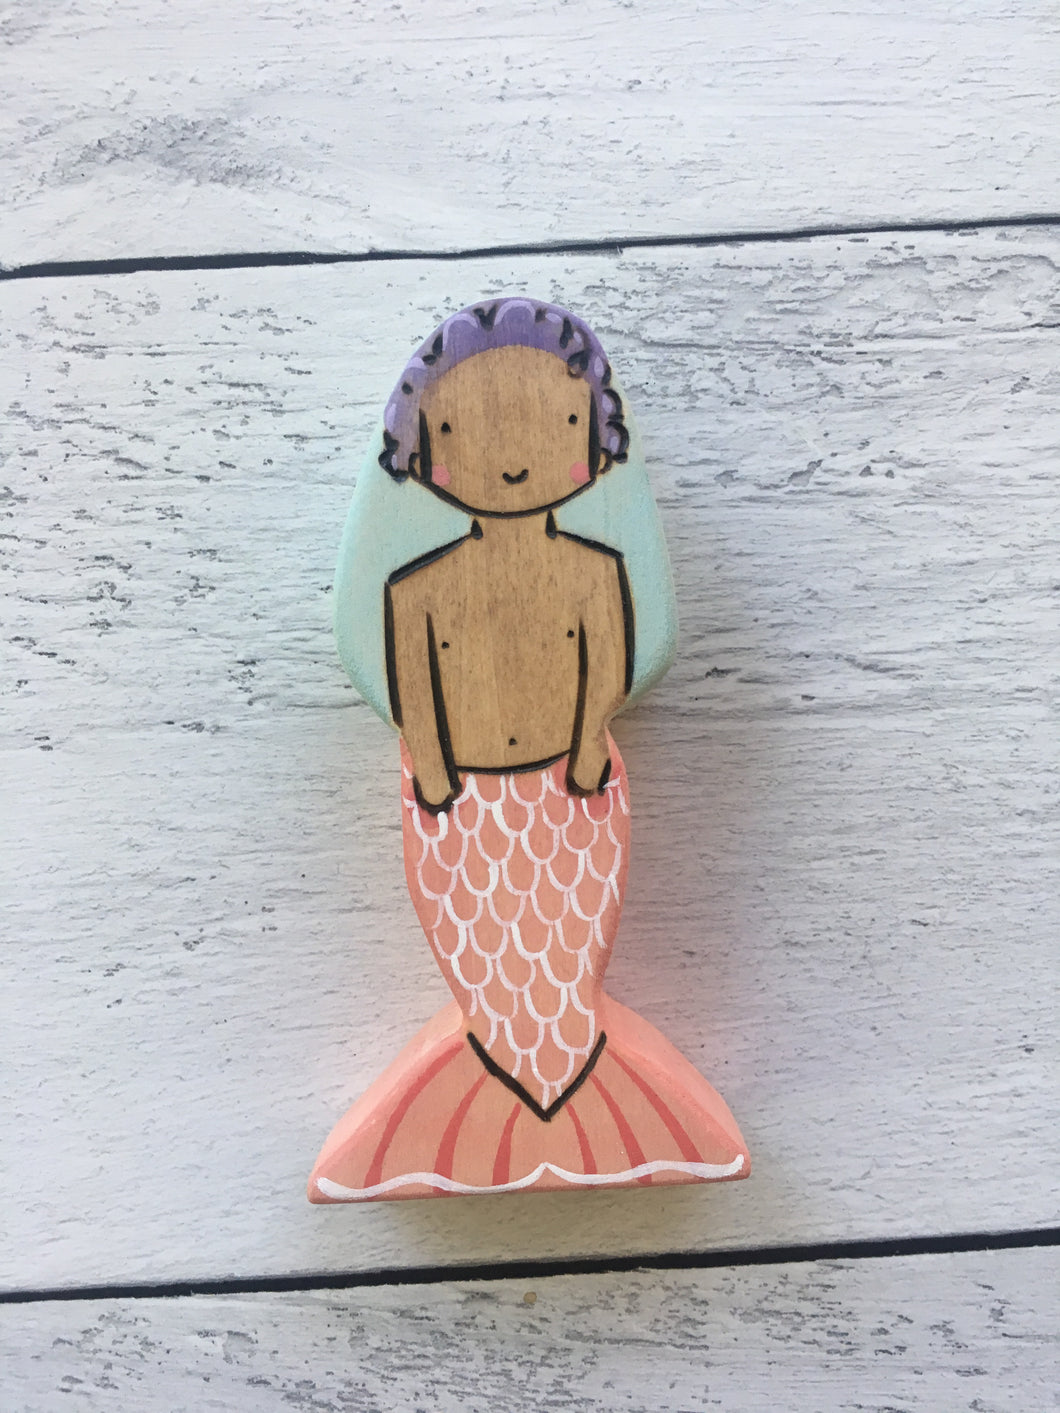 Baiji the standing mermaid